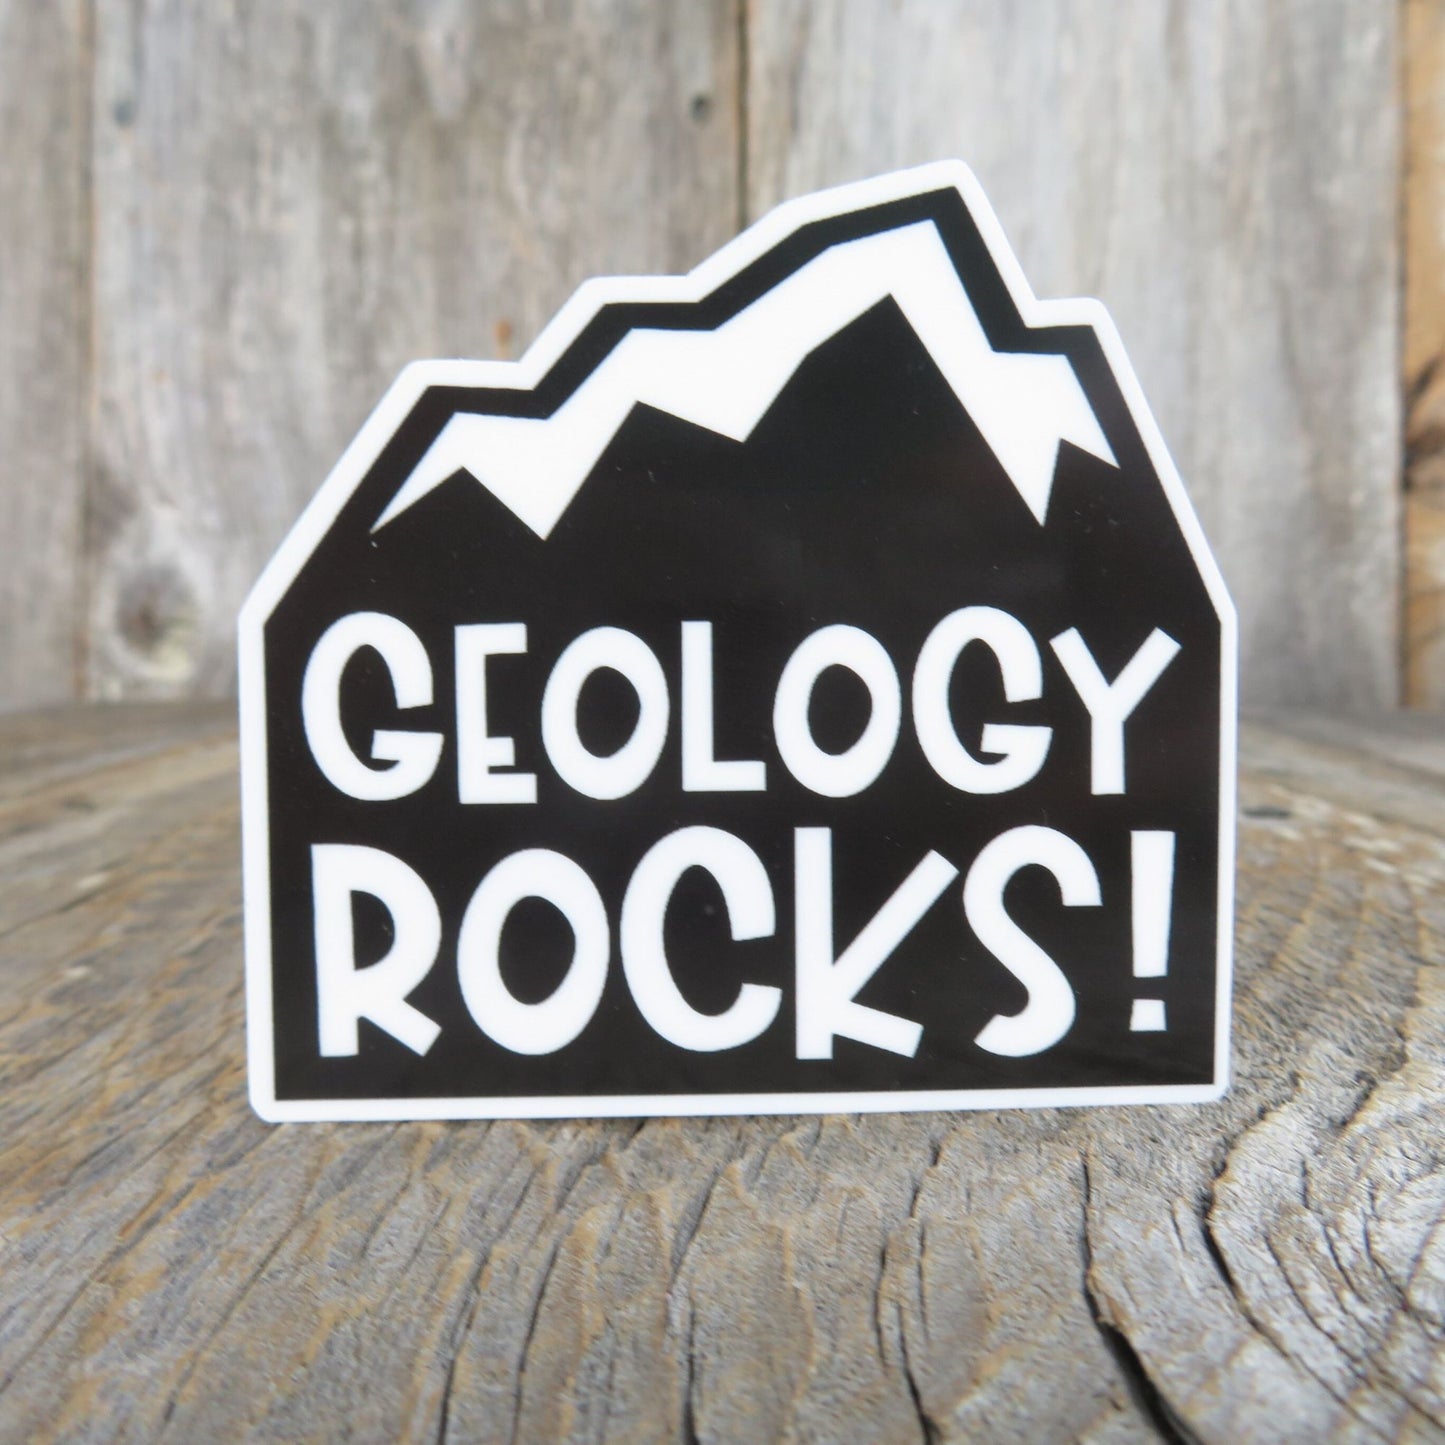 Geology Rocks Sticker Waterproof Rock Lover Geologist Humor Funny Dad Joke Science